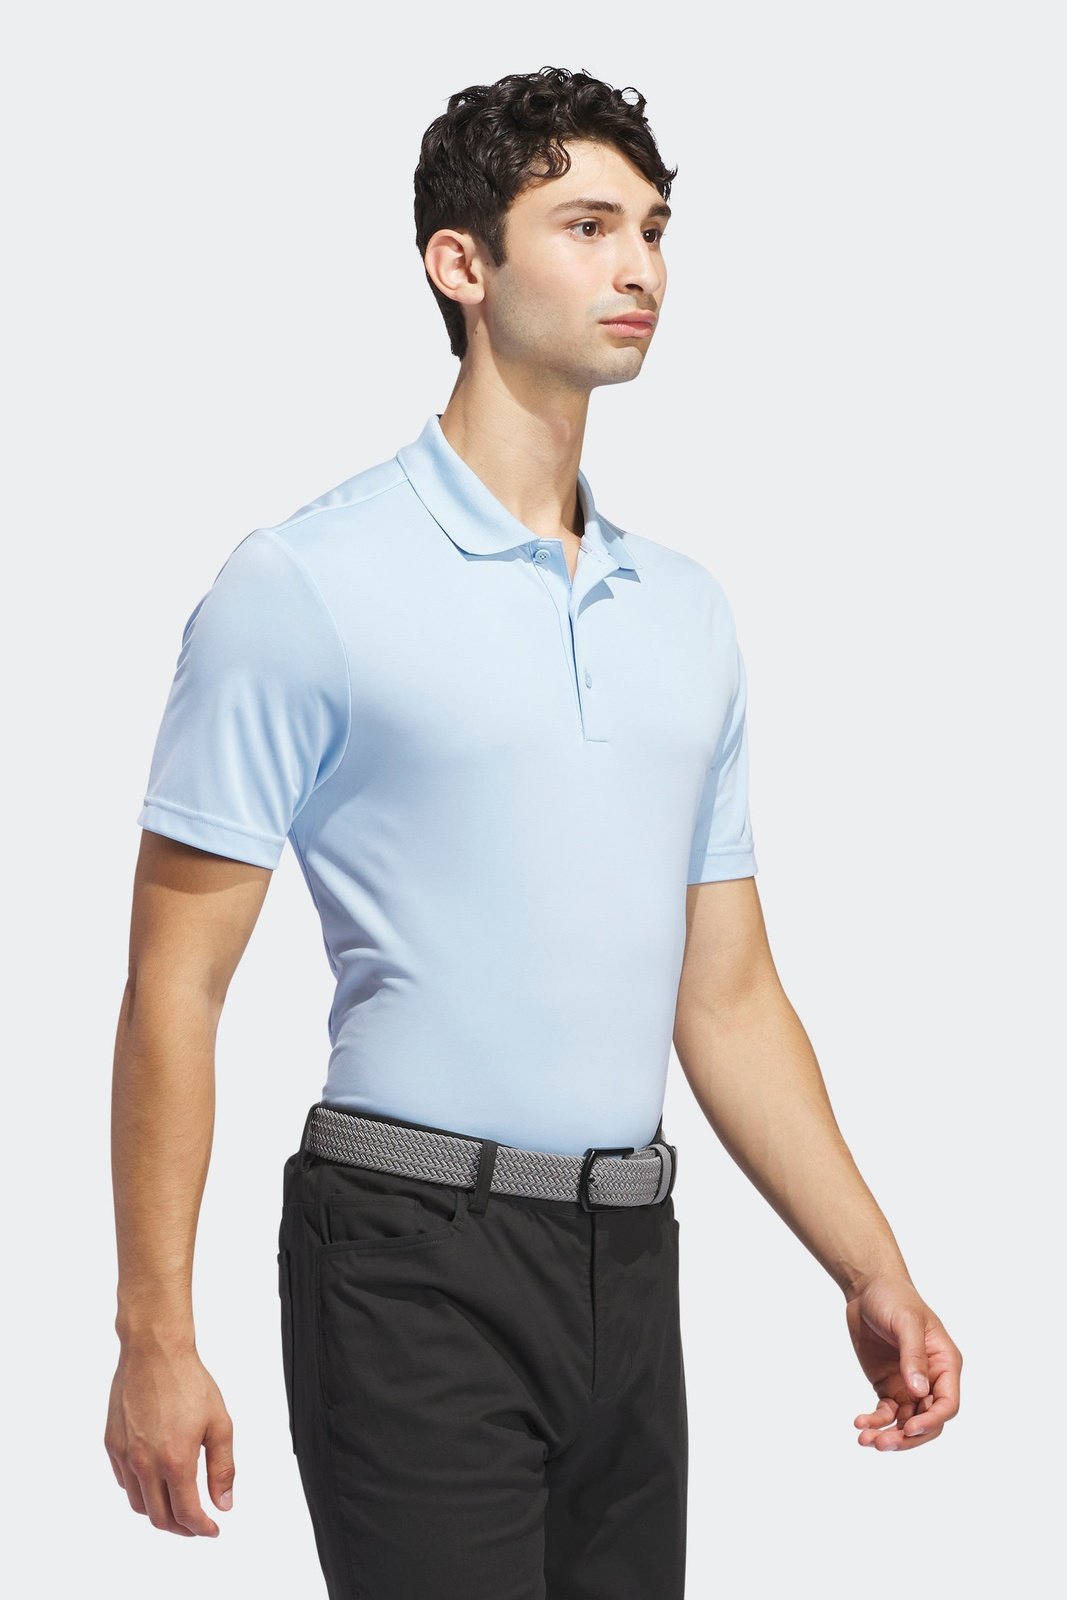 חולצת פולו לגברים GOLF PERFORMANCE POLO SHIRT בצבע תכלת